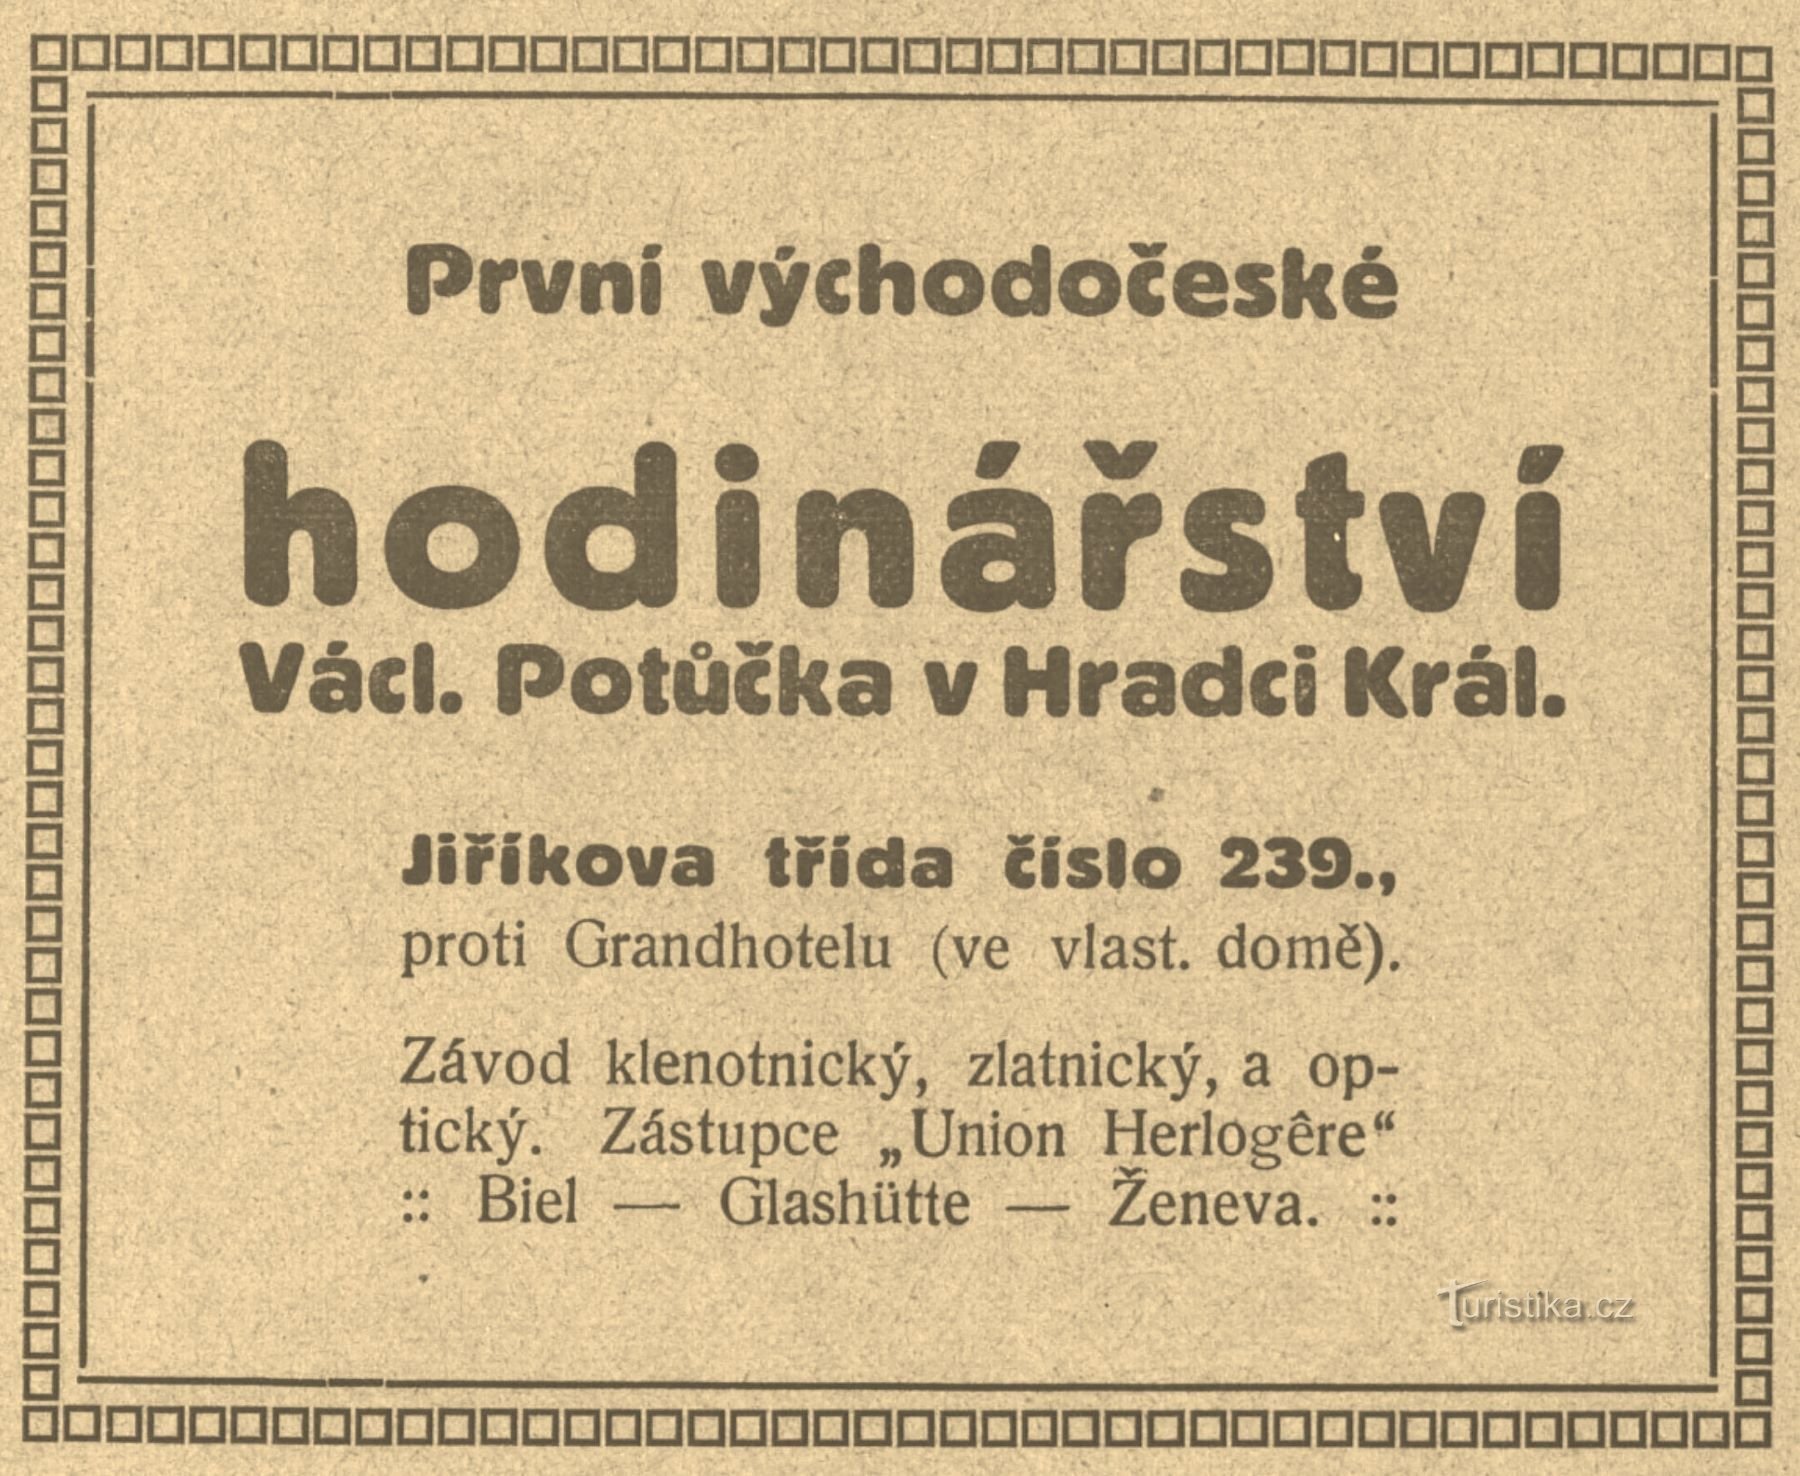 ポトゥチェクの時計製造会社の 1911 年当時の広告